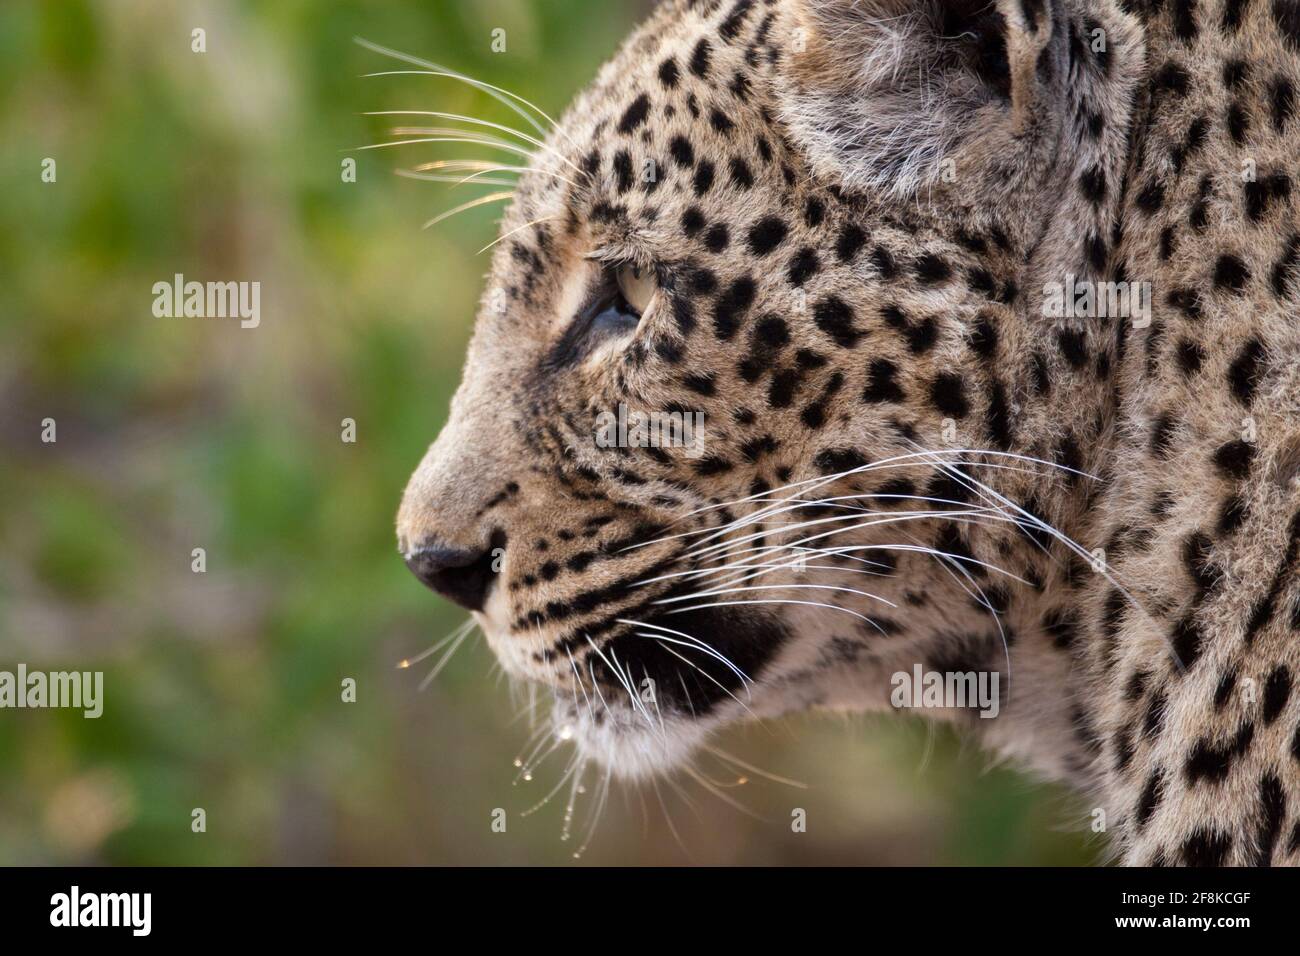 Eine Leopardenkönigin hat ihren ersten Morgentrunk. Ihr Name ist Mogonzwe, was Hammerkopf bedeutet. Sie ist 15 Jahre alt und regiert diesen Teil des Sabi-Flusses. Stockfoto